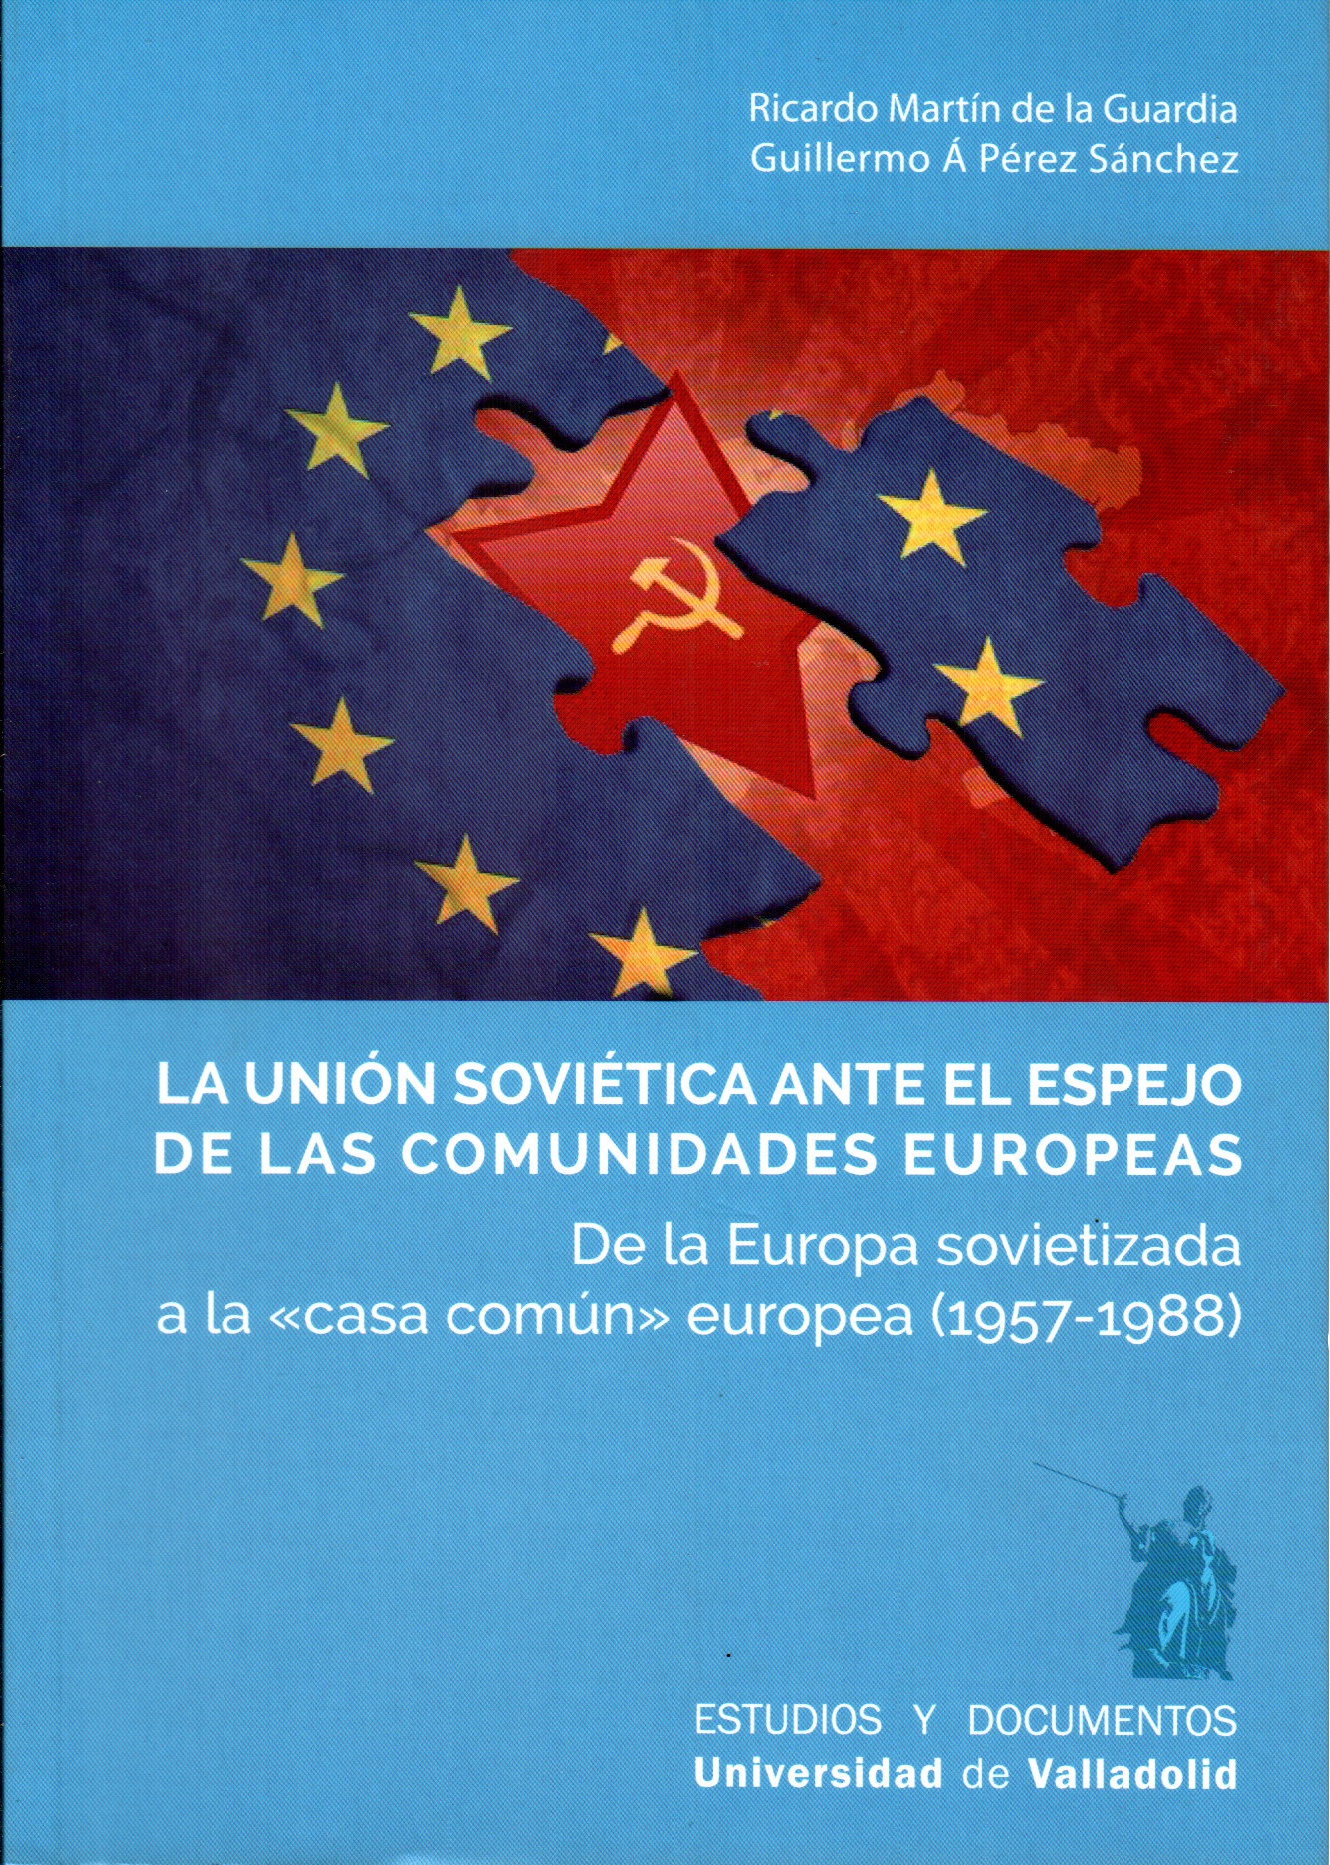 La Unión Soviética ante el espejo de las comunidades europeas. De la Europa sovietizada a la “casa común” europea (1957-1988)